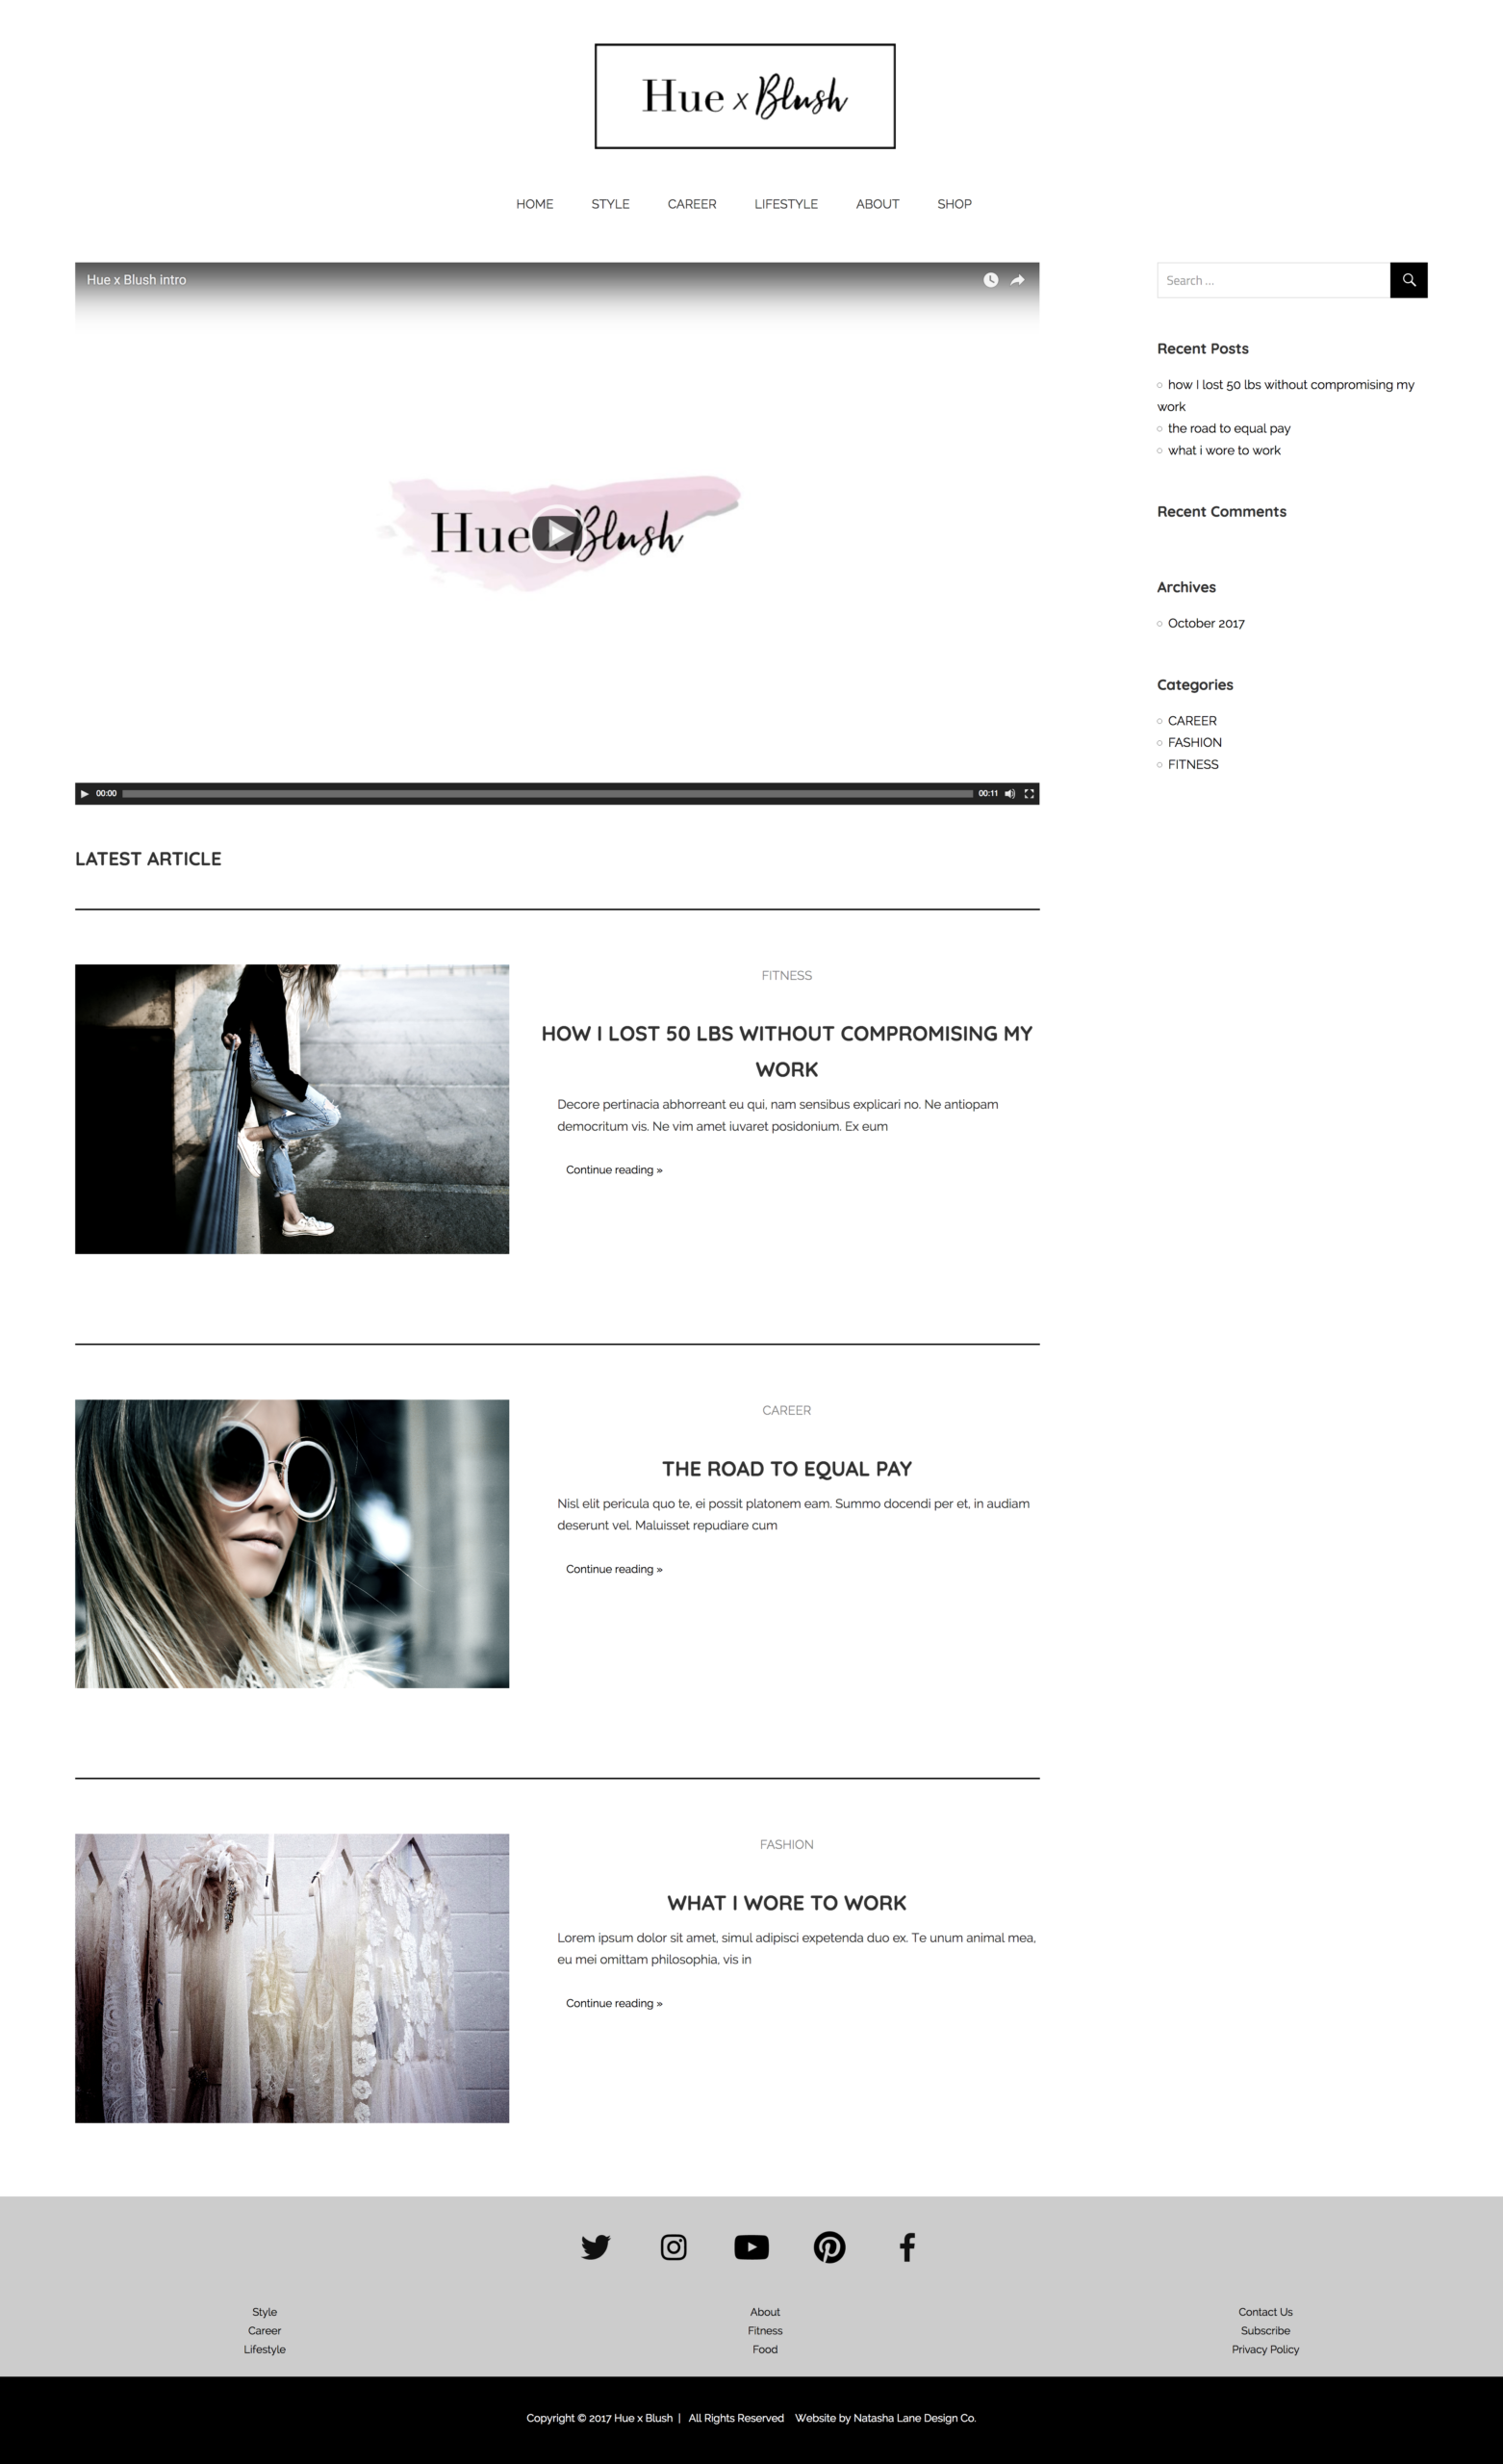 Brand x Web Design for Hue x Blush website